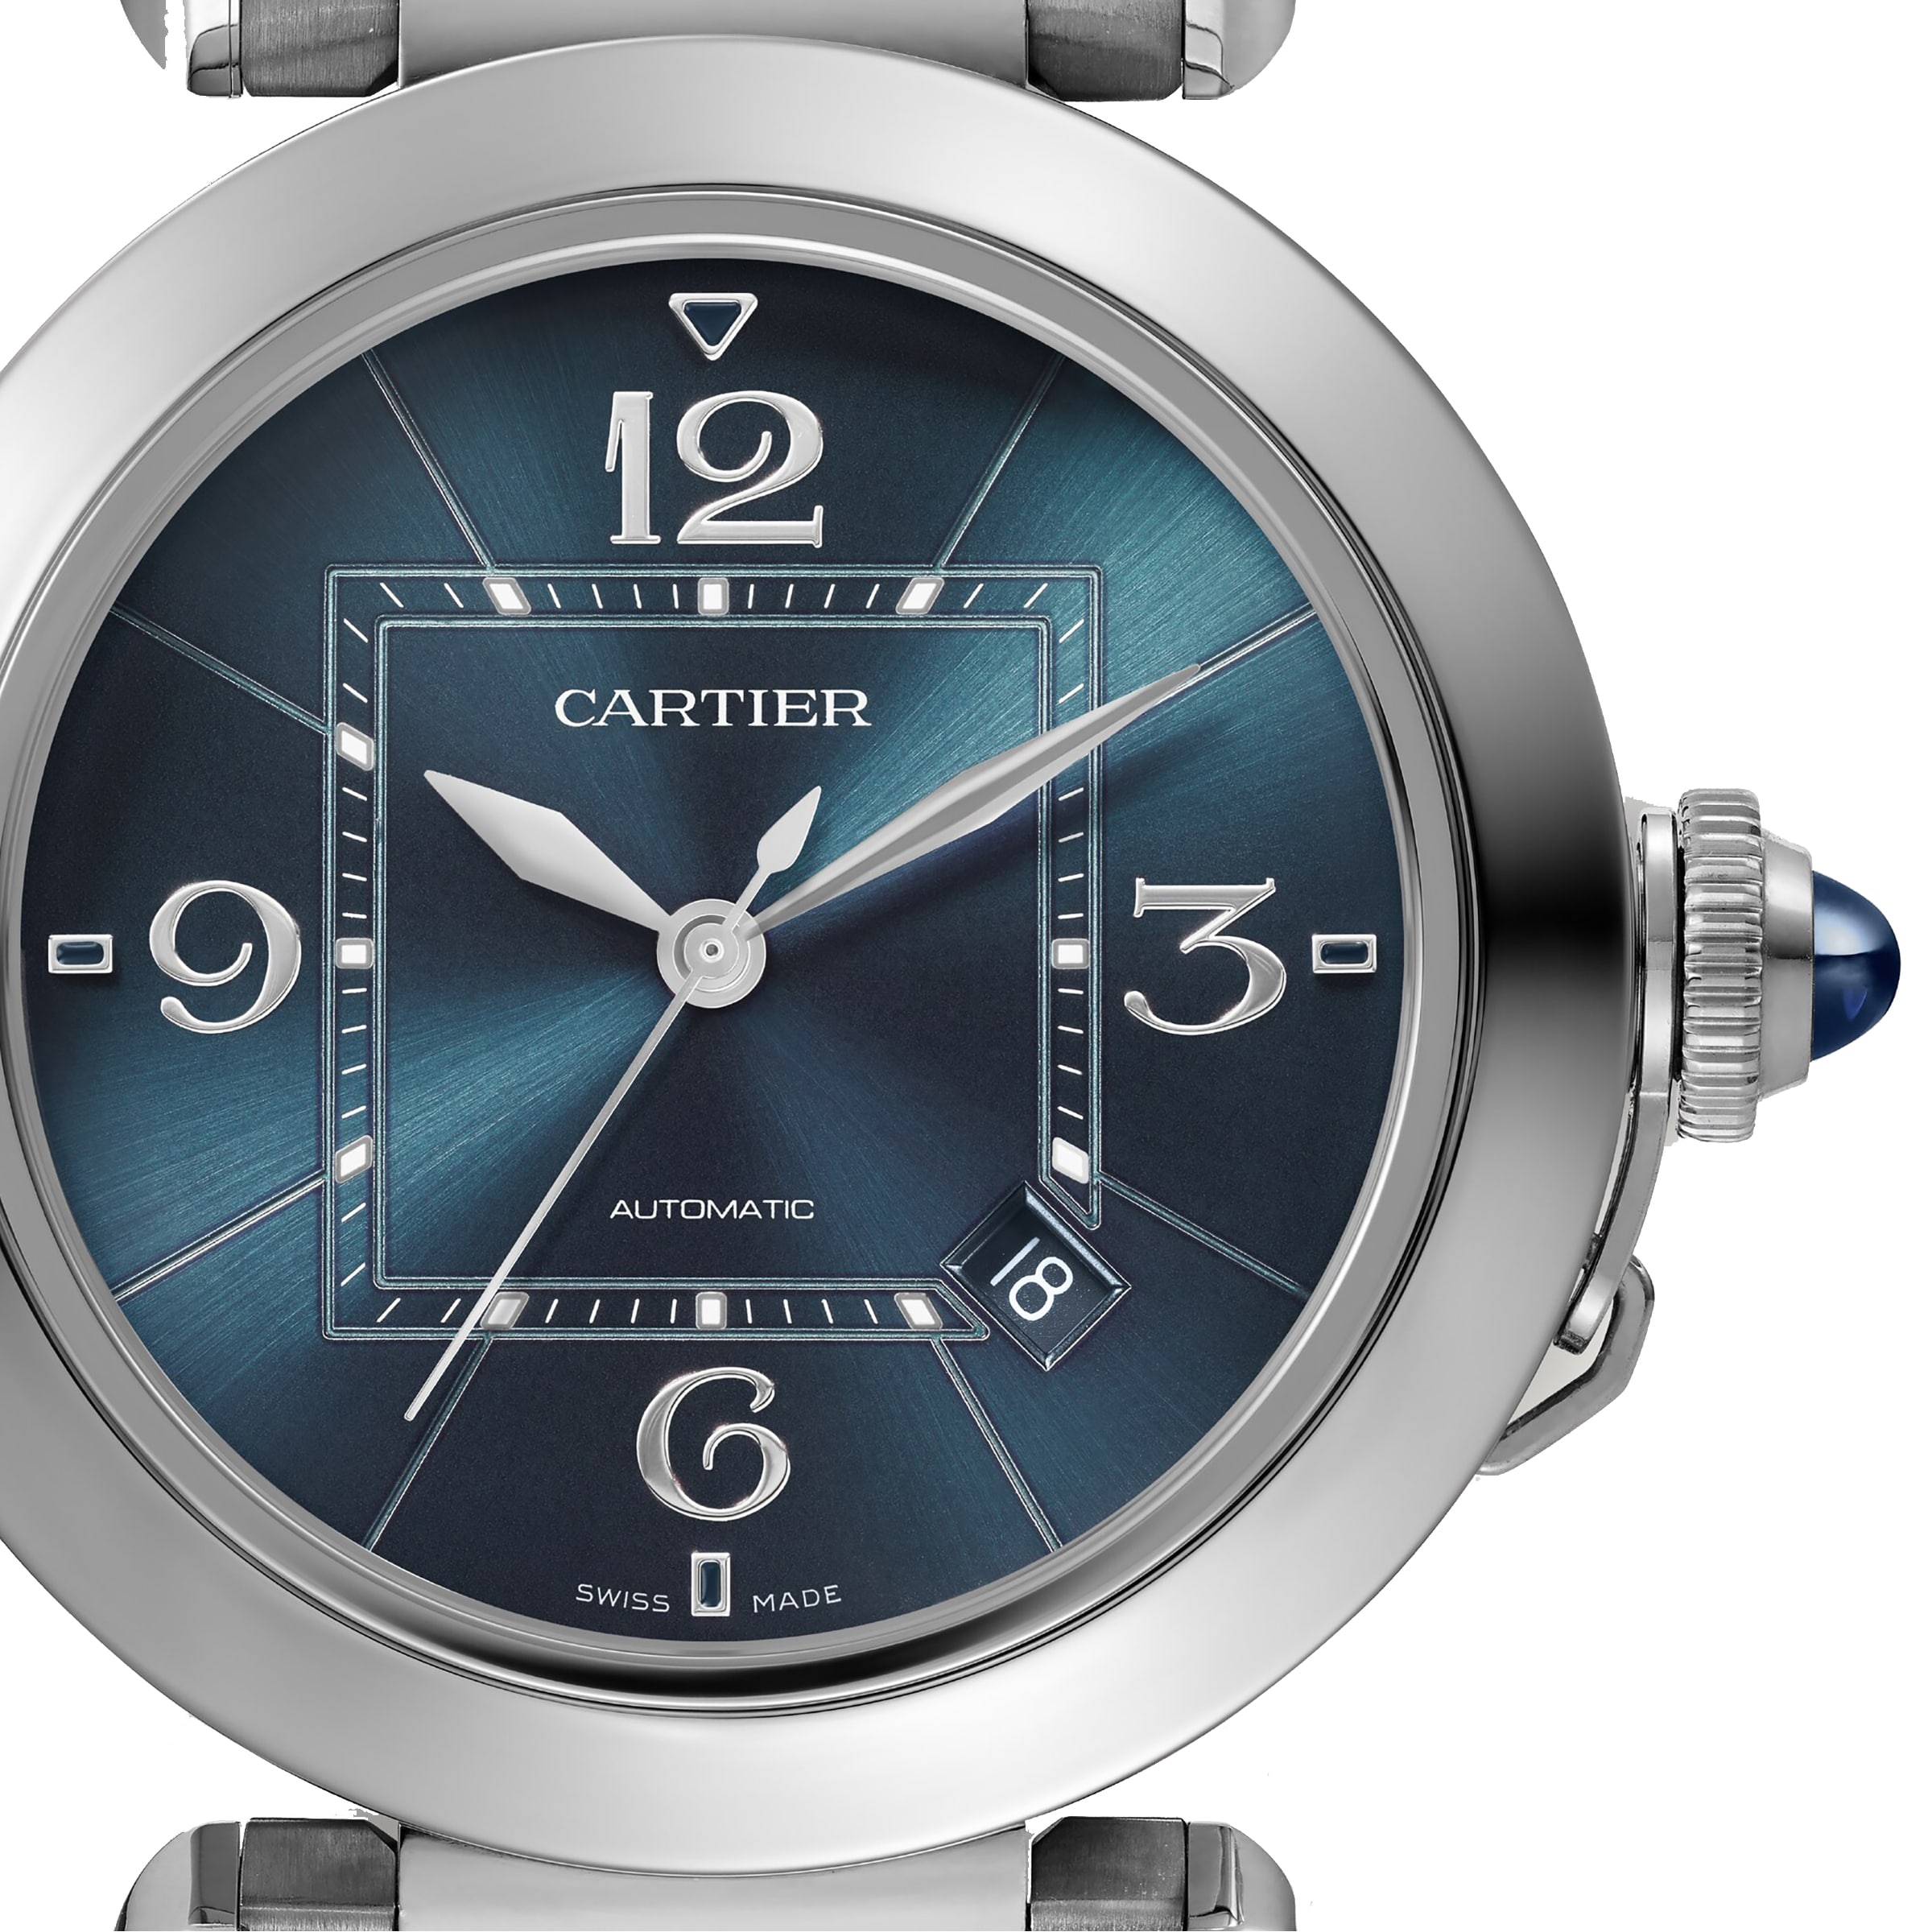 Cartier Pasha de Cartier watch, 41 mm, mechanical movement with 